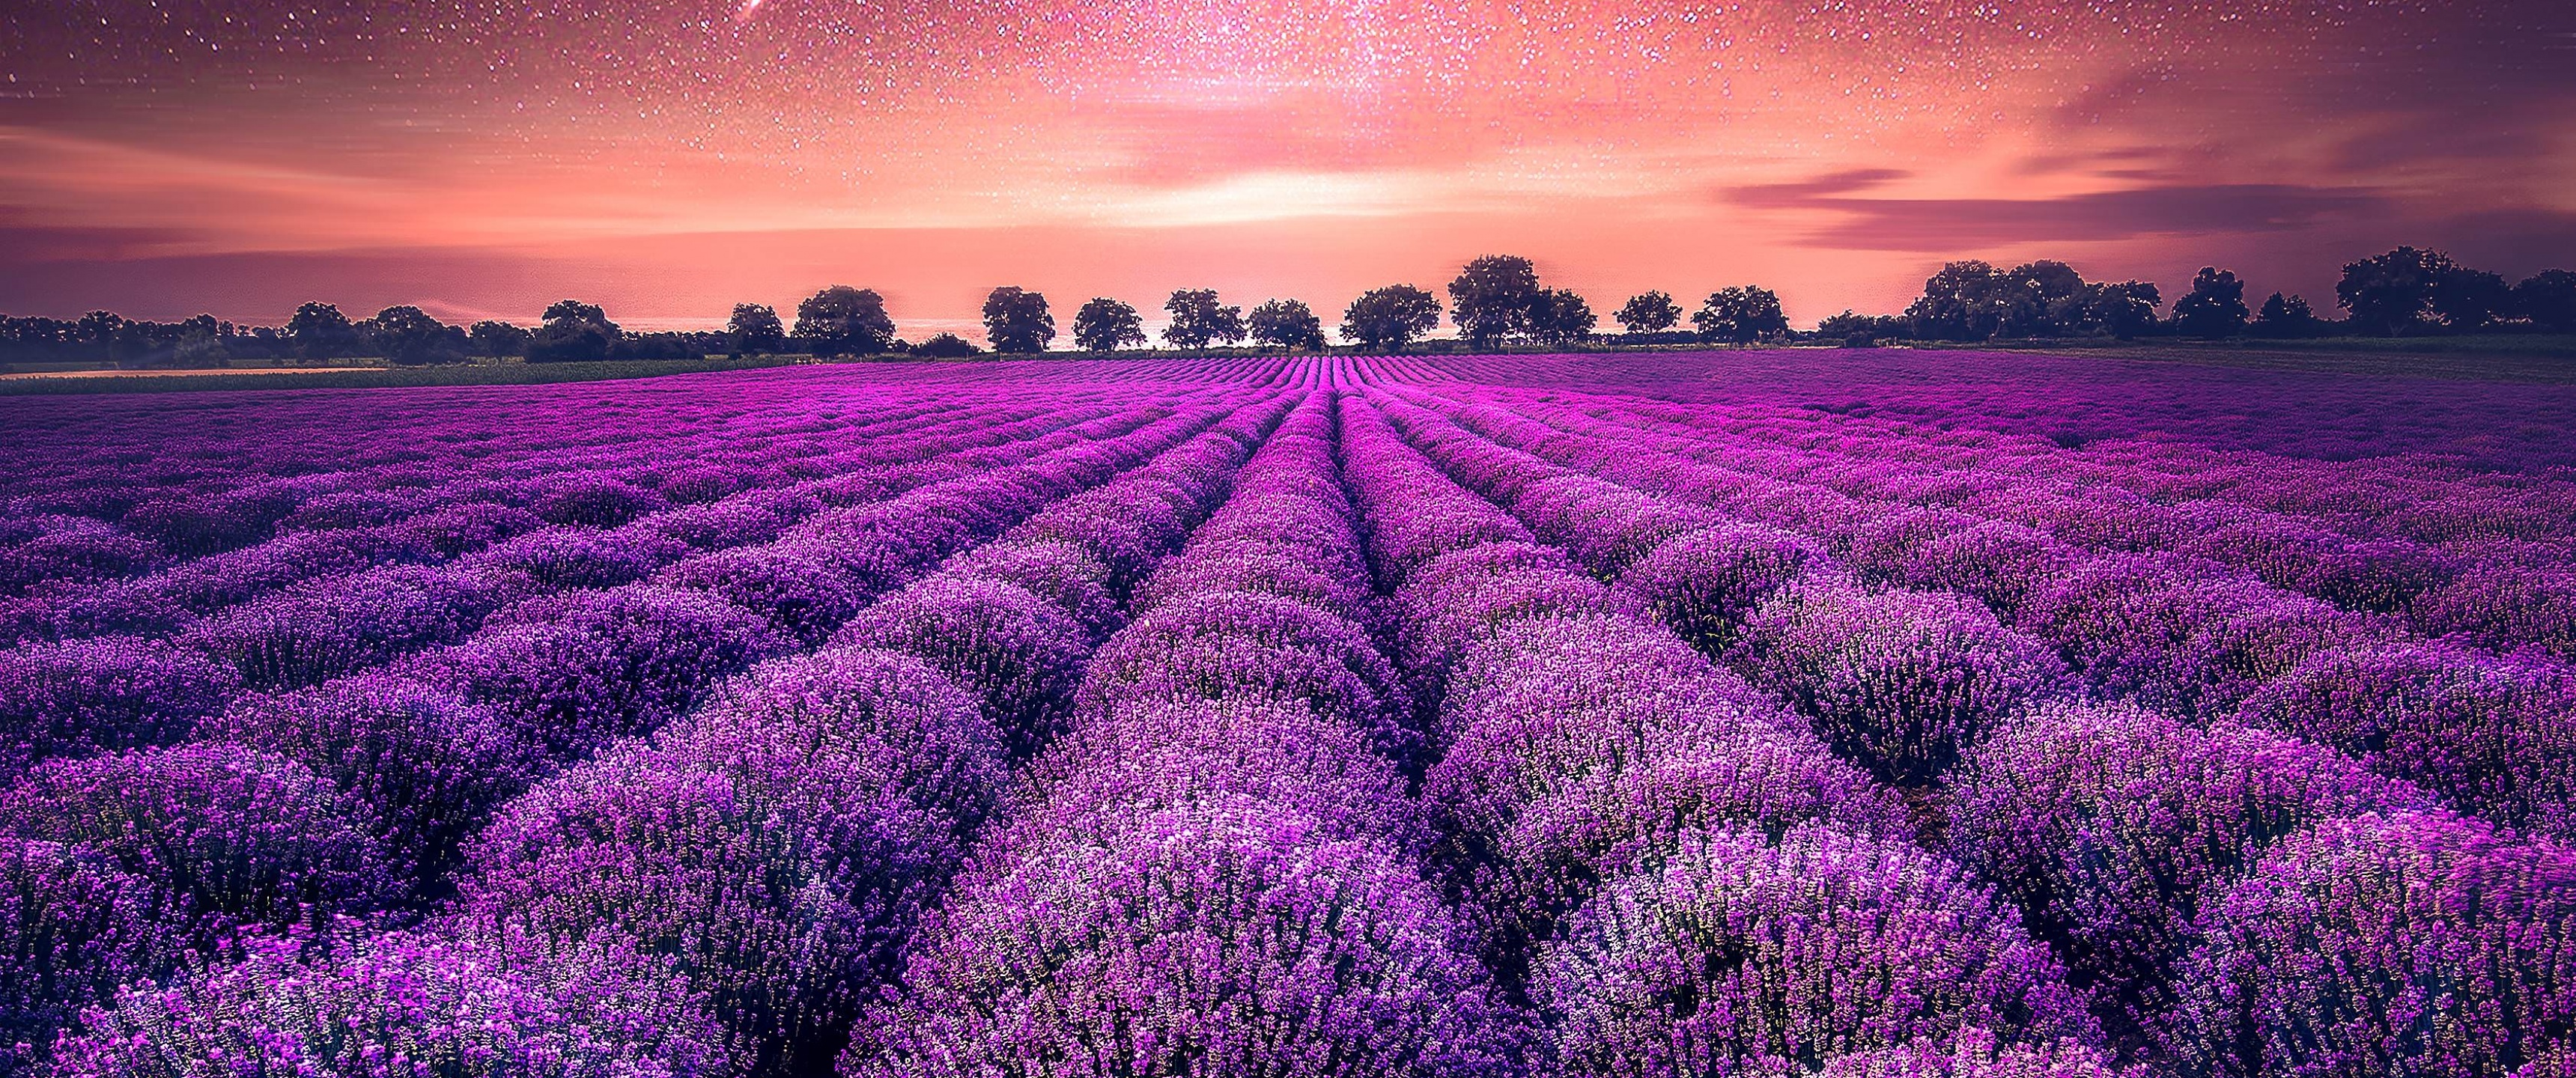 Lavender farm, Lavender fields, Sunset beauty, Nature's charm, 3440x1440 Dual Screen Desktop